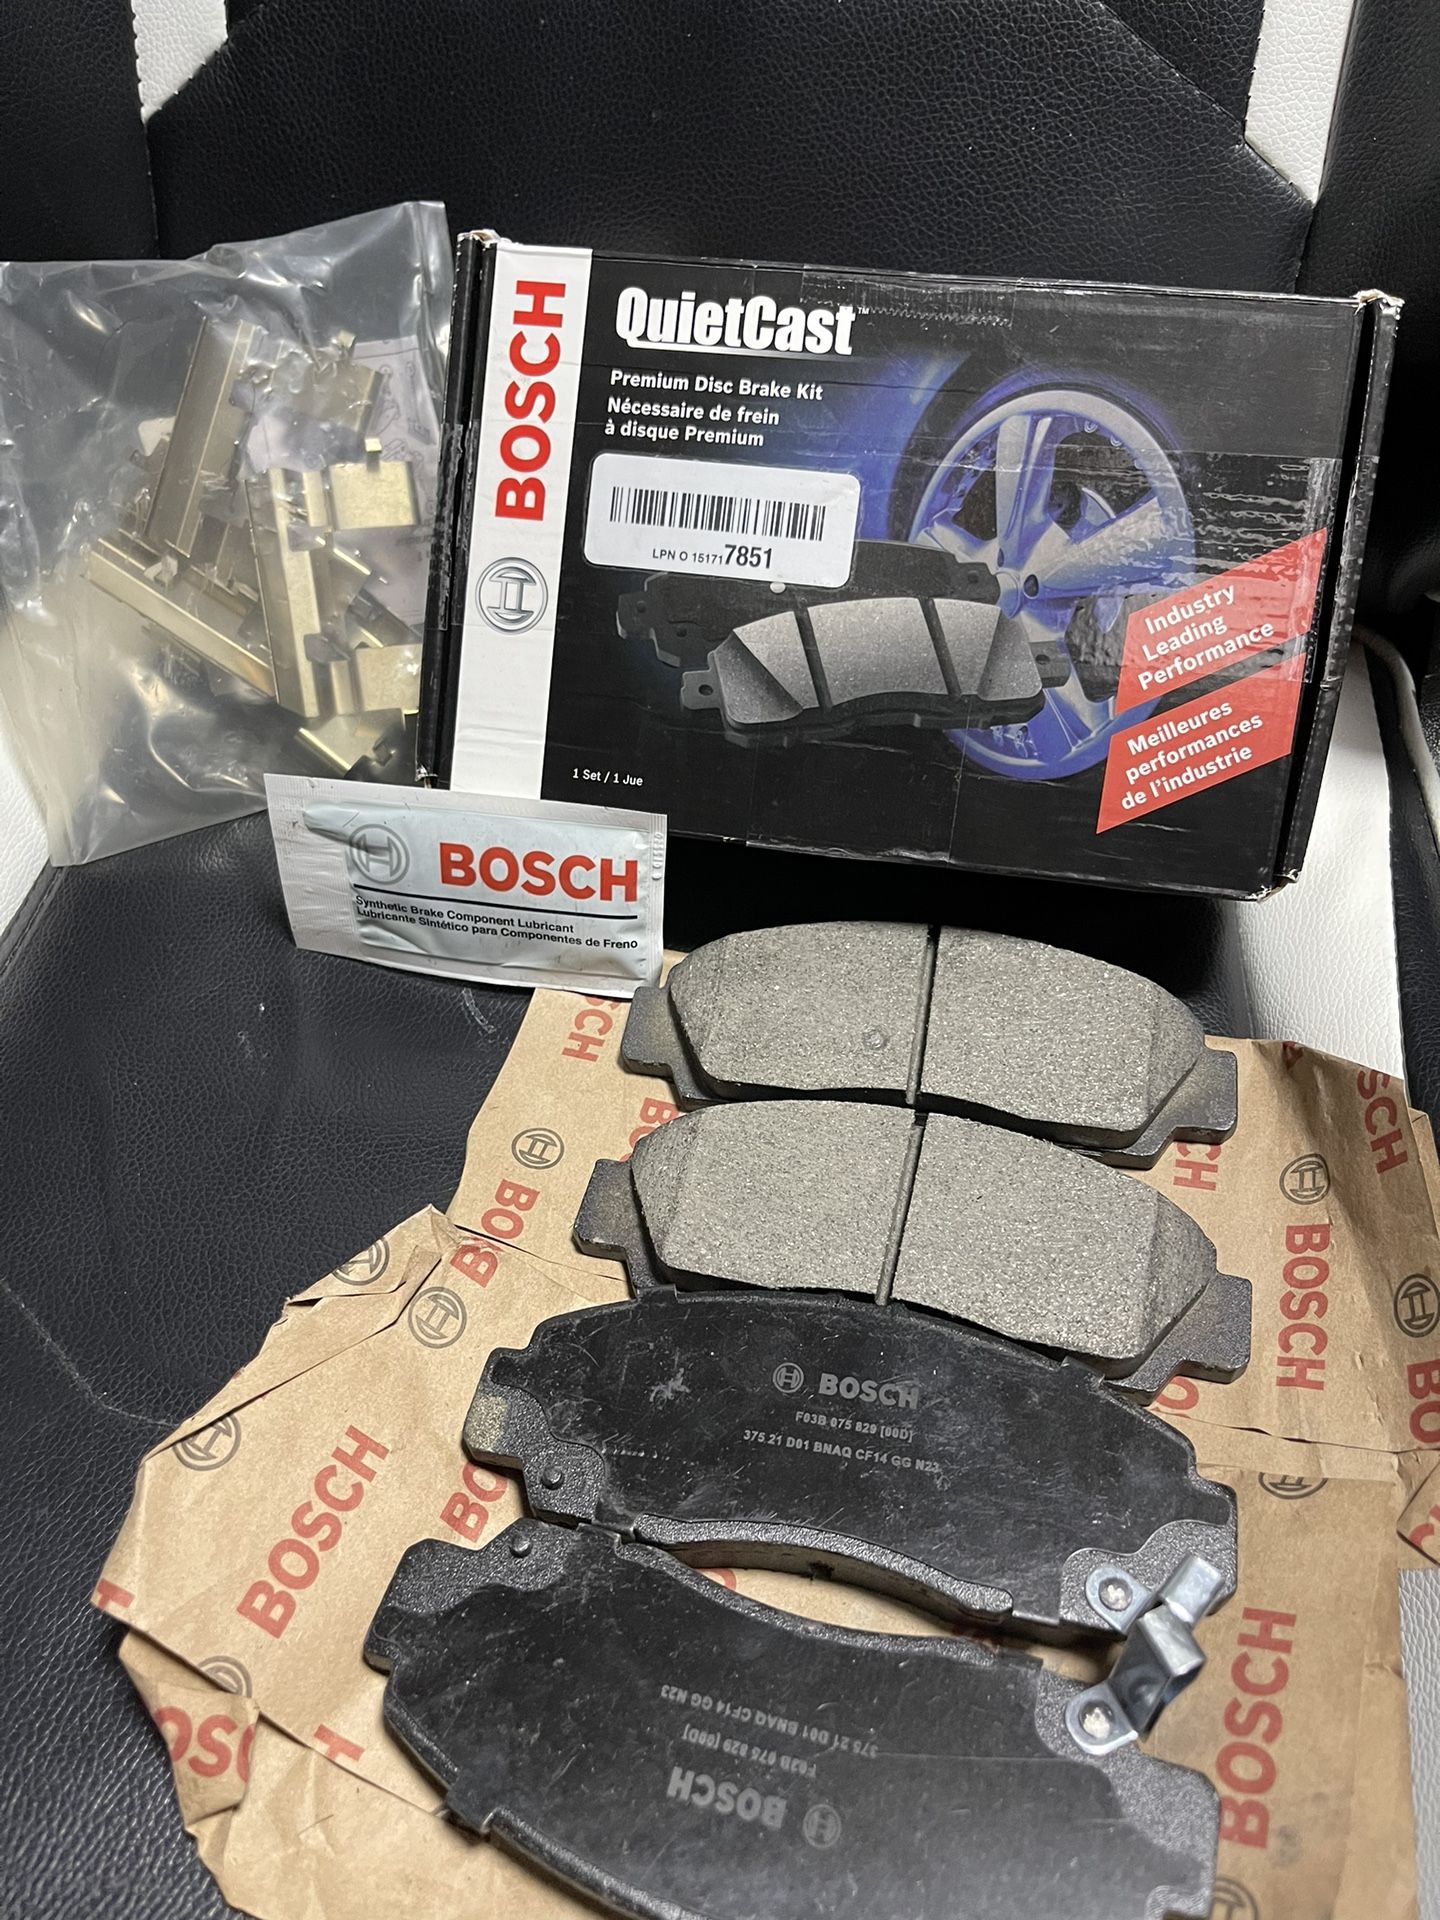 Bosch QuietCast Premium Ceramic Front Disc Brake Kit BC1506 For Acura/Honda